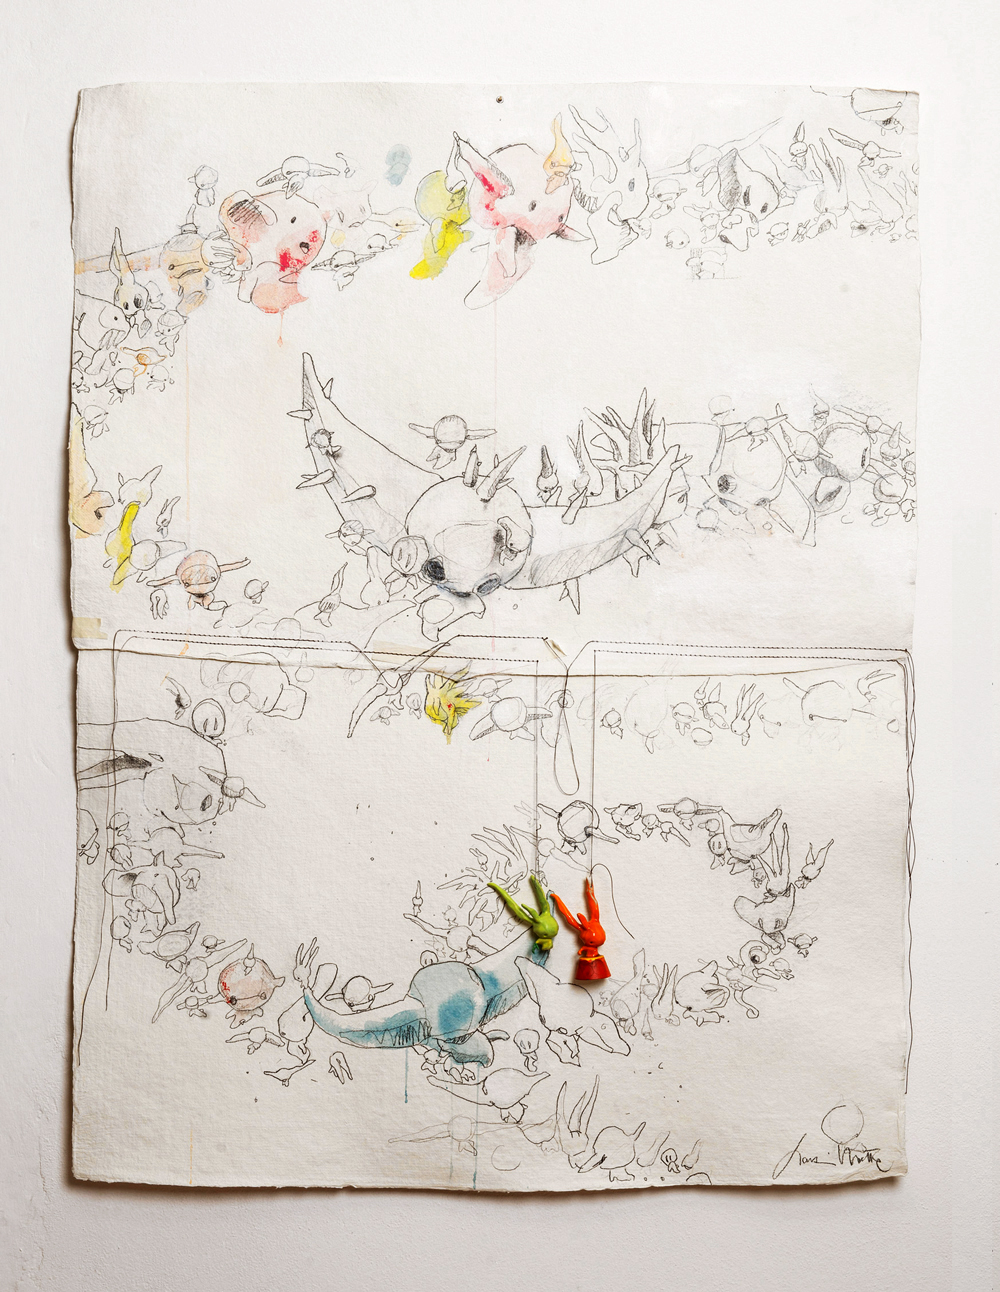 Concluding the Concept - Stampa serigrafica su carta fatta a mano / Serigraphic print on hand made paper - 2014